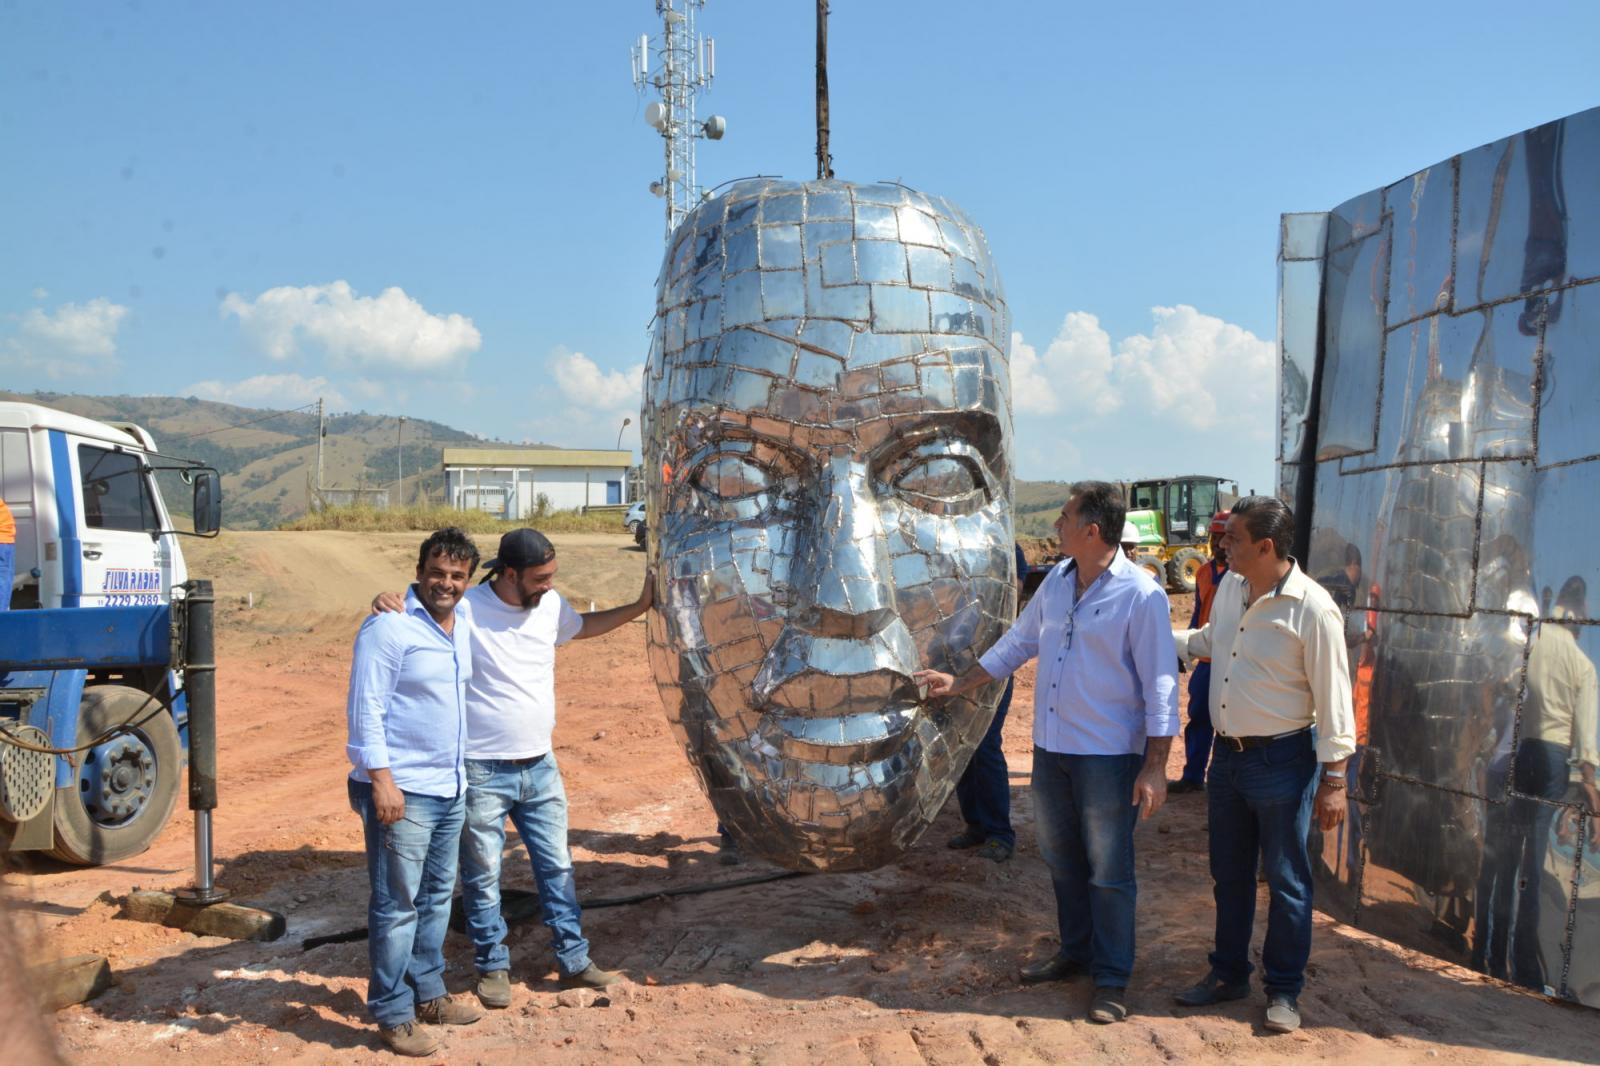 Imagem de Gilmar Pinna e amigos visitando a instalação da estátua em Aparecida